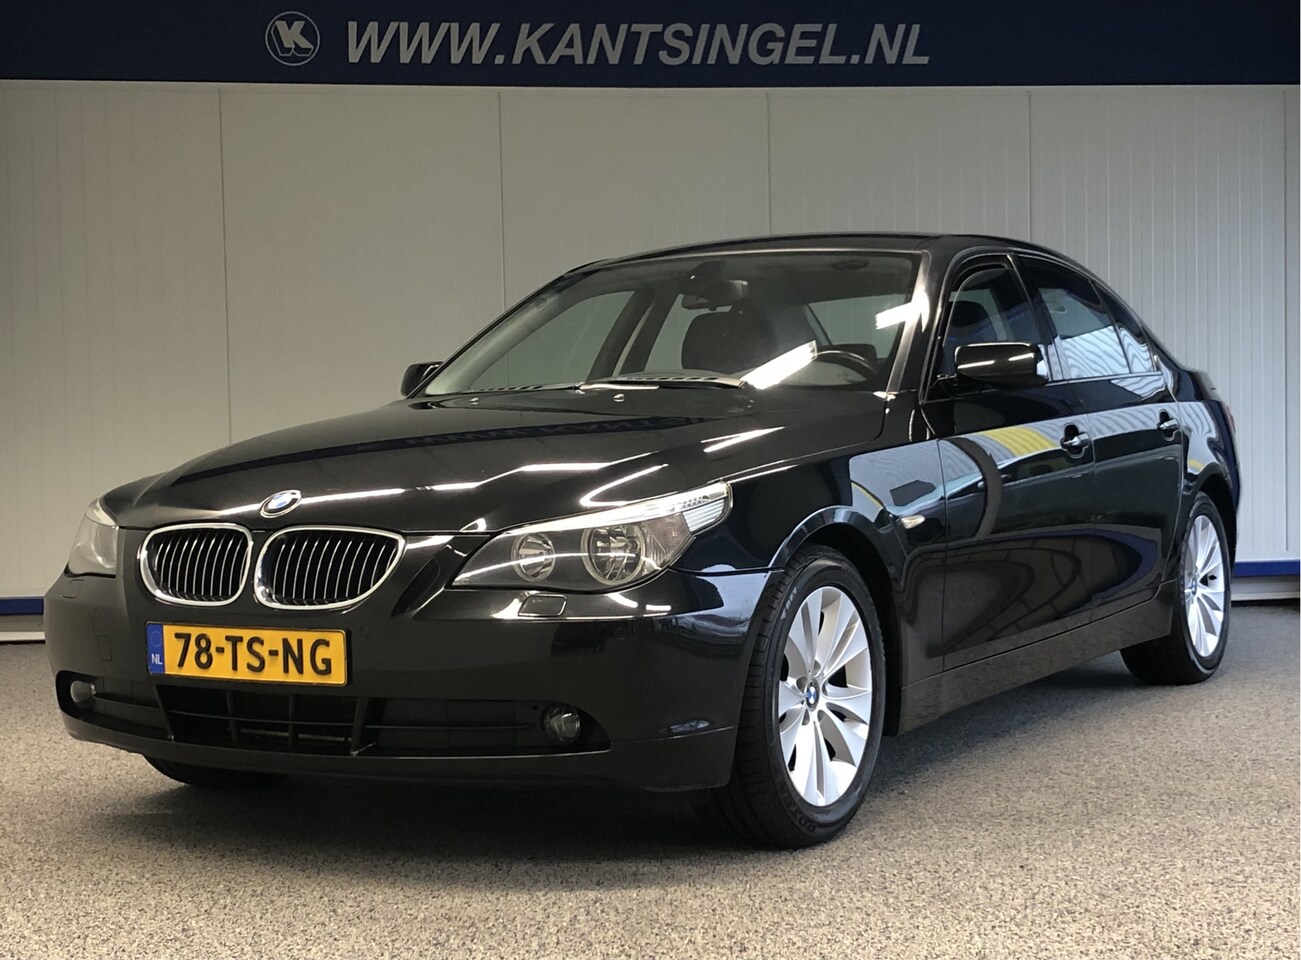 BMW Executive-Navigatie-Automaat-100% Onderhoud-Etcc - Occasion te koop op AutoWereld.nl